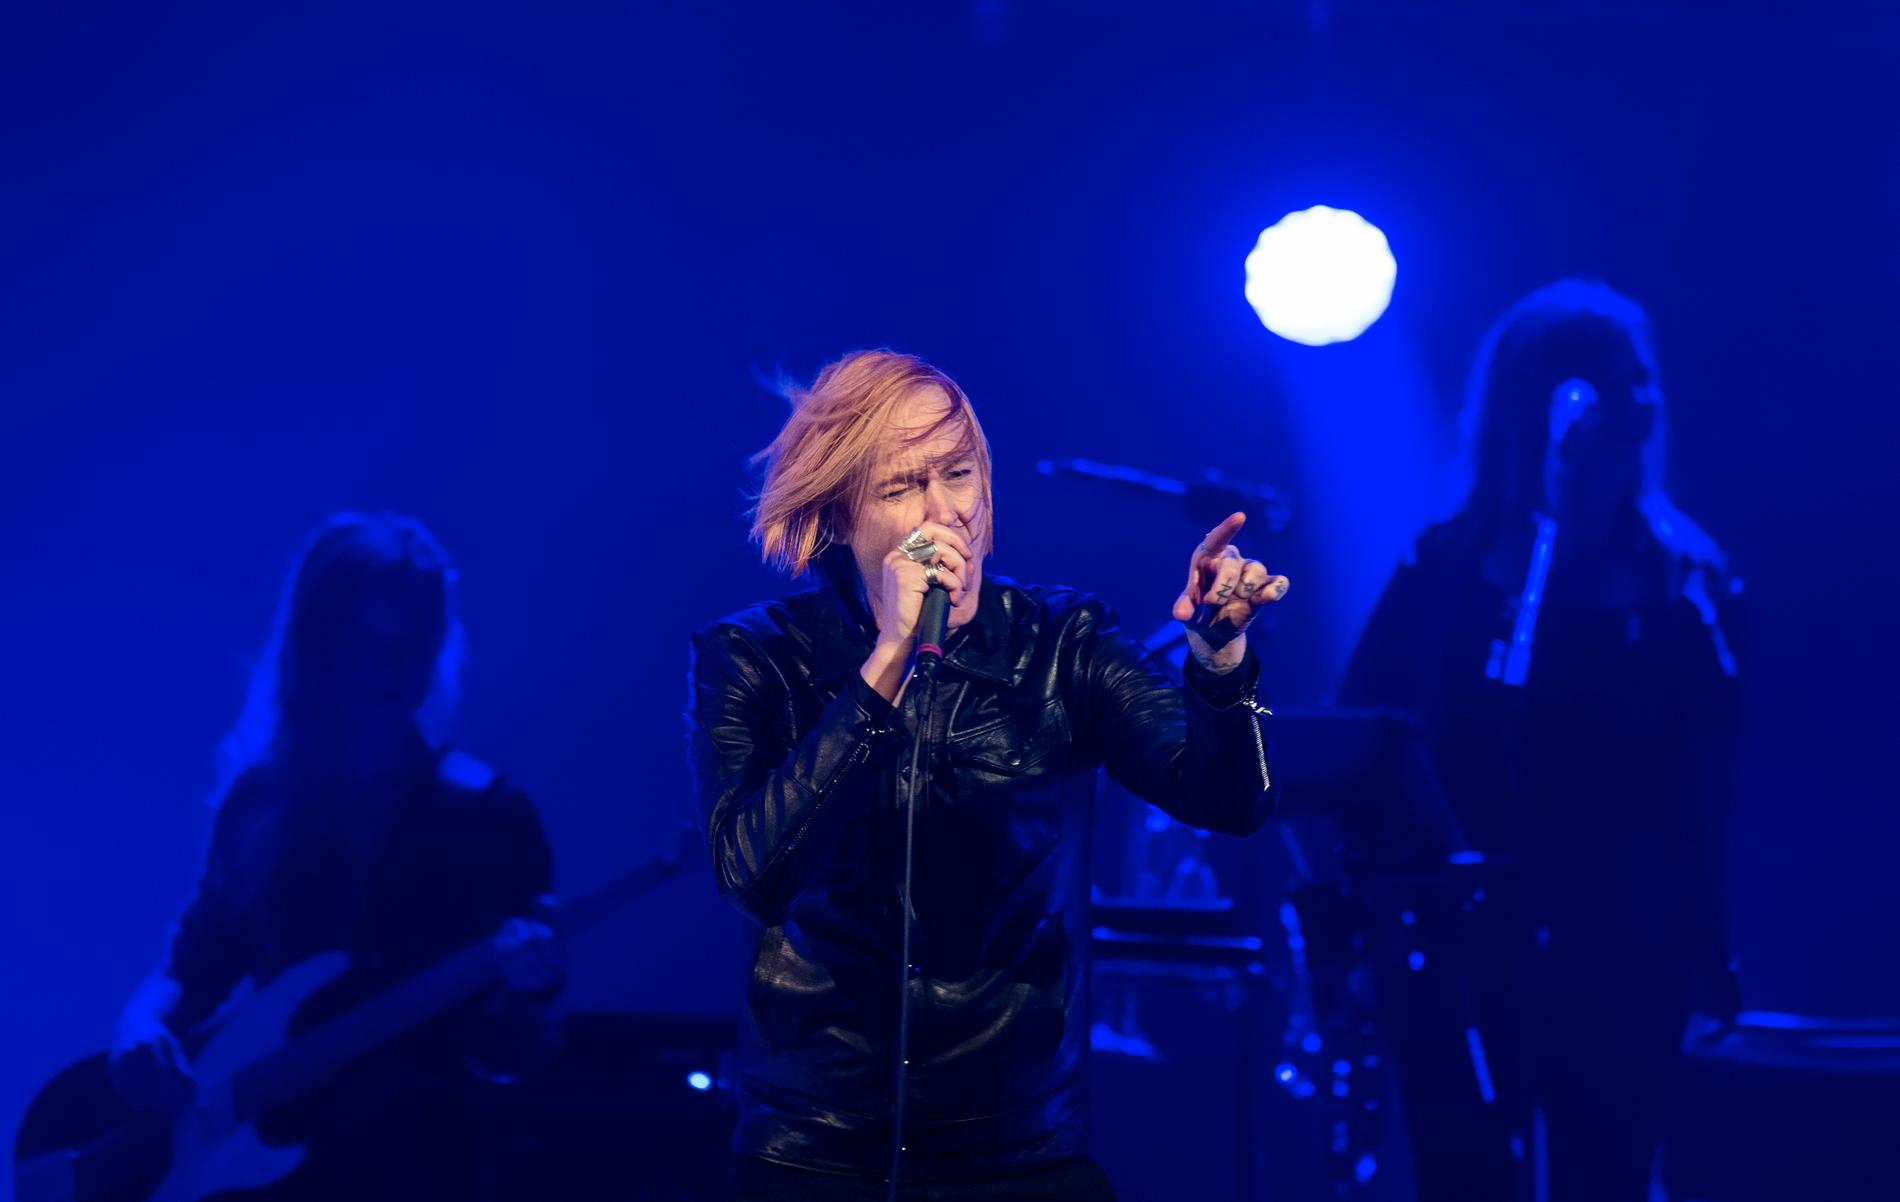 Dennis Lyxzén öppnade hyllningskonserten till David Bowie med ”Rebel rebel”.